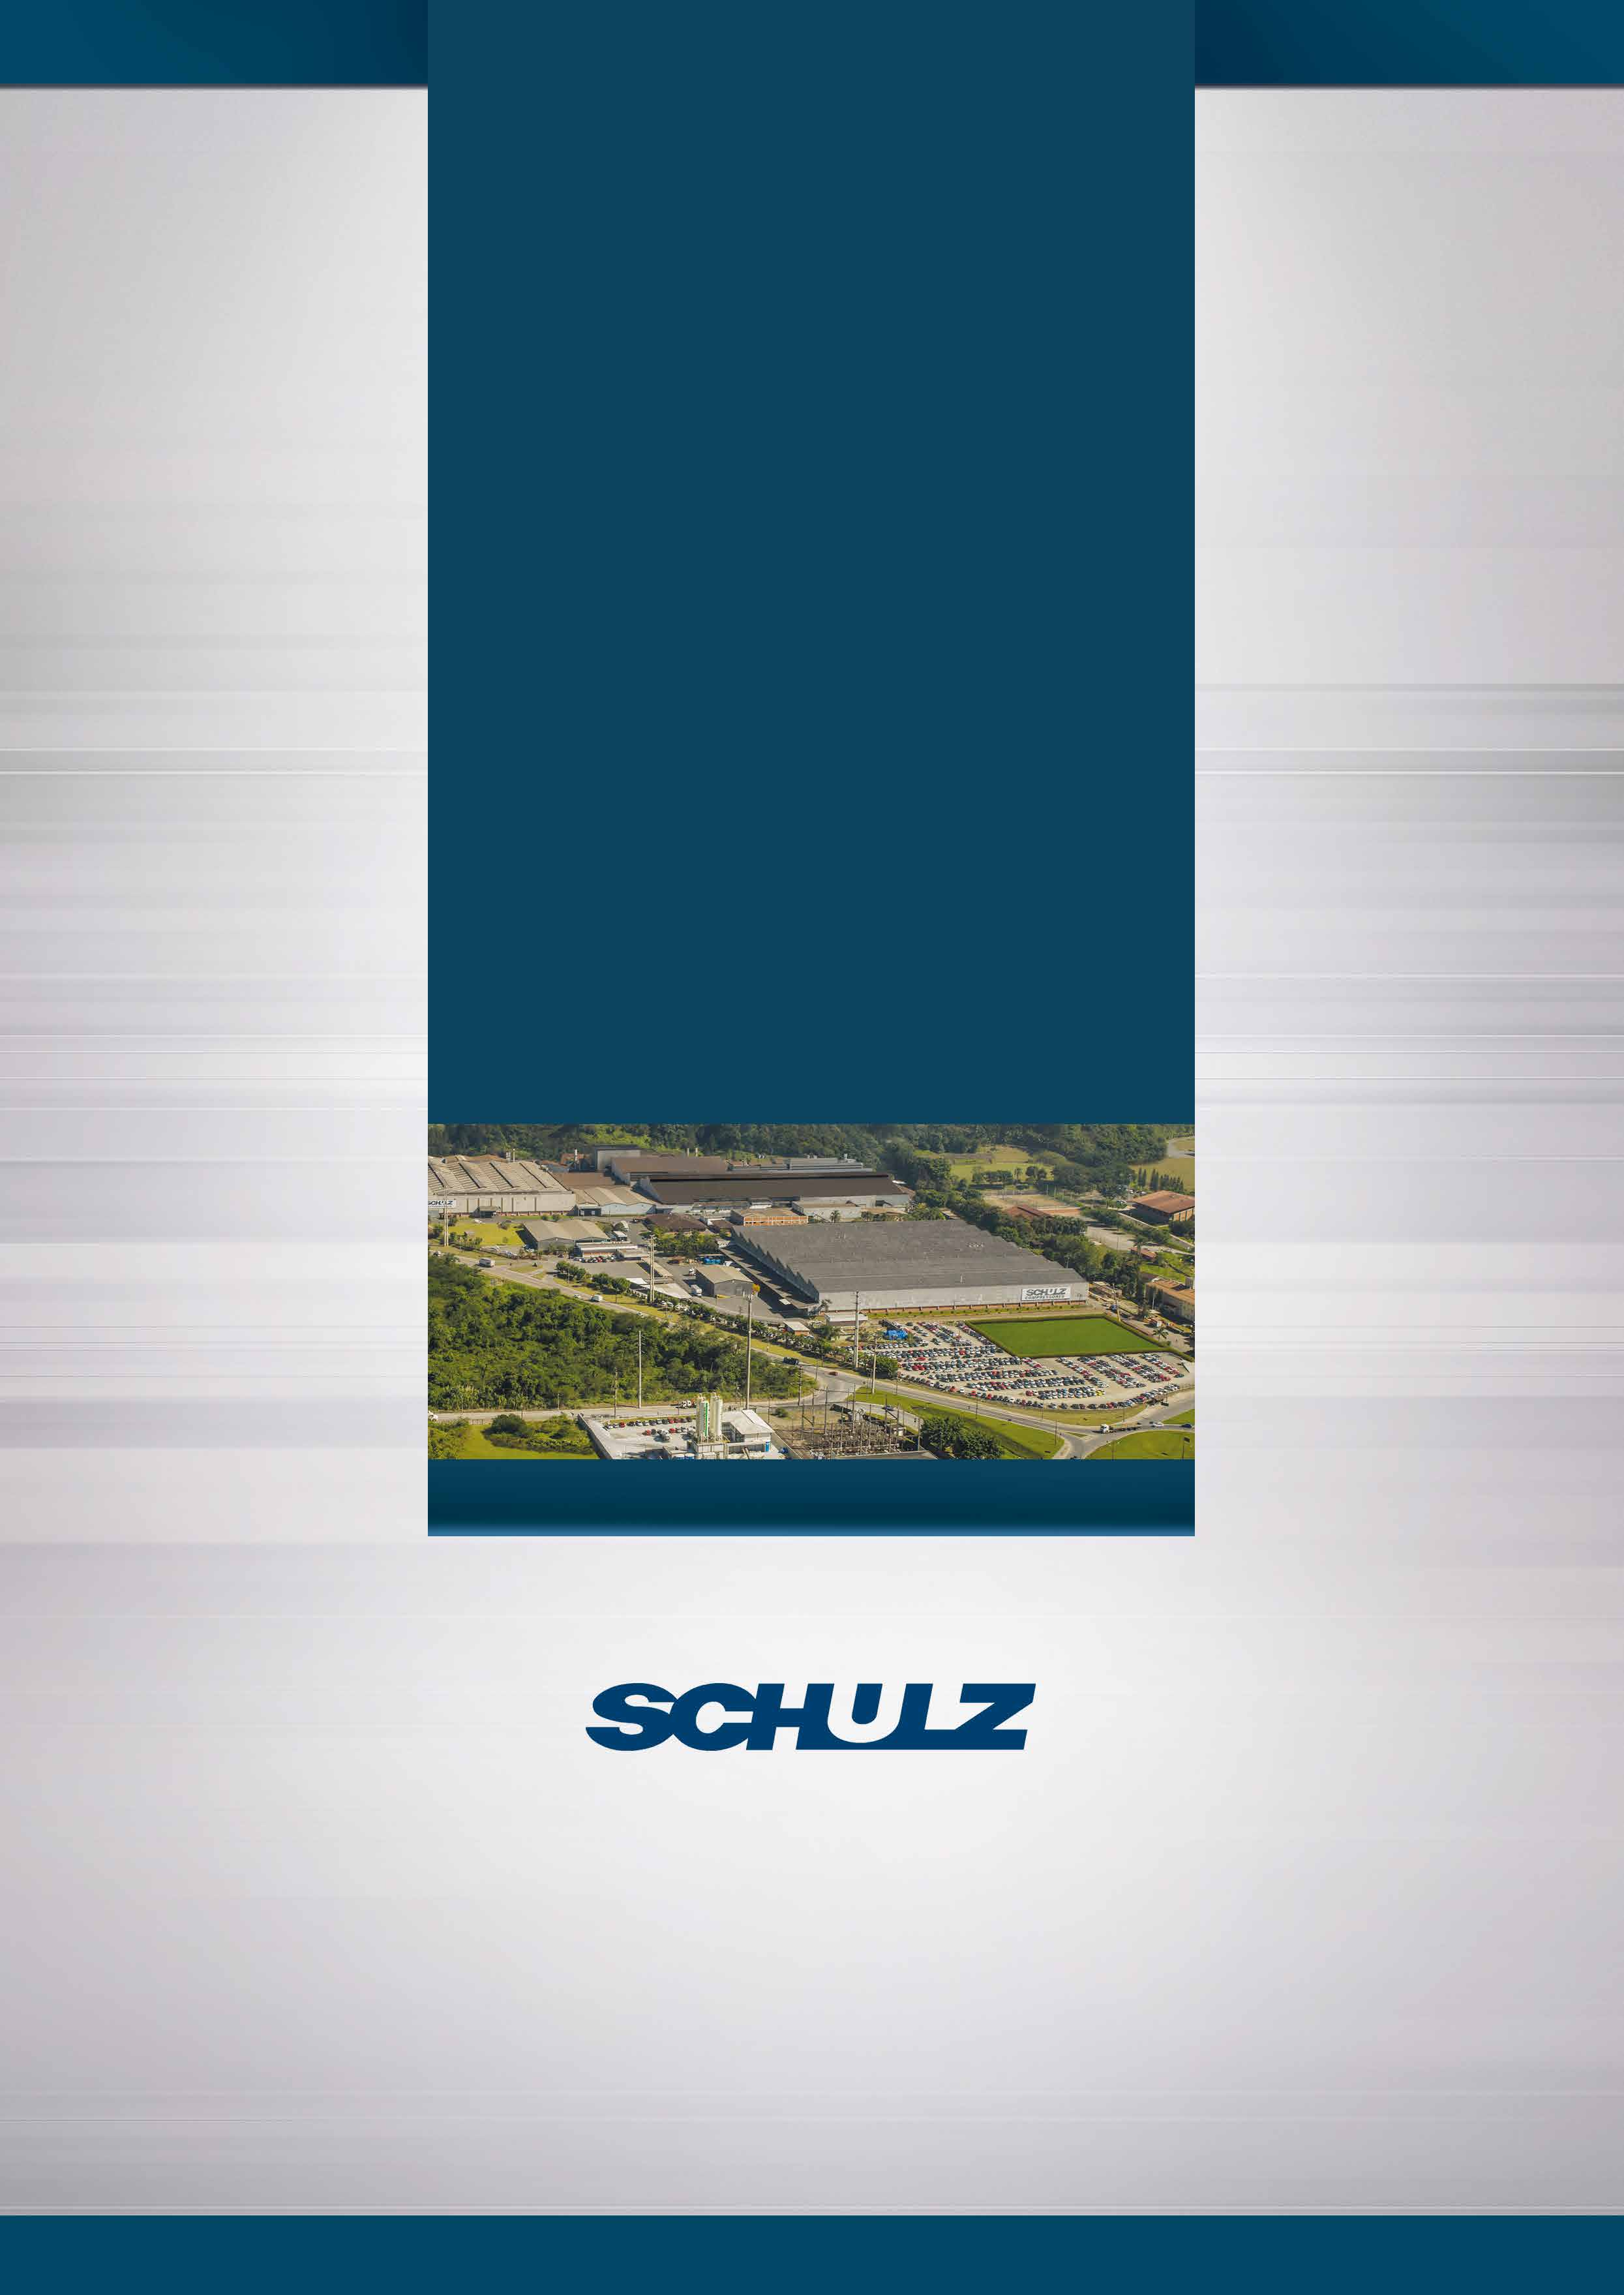 Desde 1963 atuando no mercado, a Schulz é uma empresa em contínua evolução. No início, suas atividades se concentravam na área de fundição e, em 1972, passaram a ser produzidos compressores de ar.